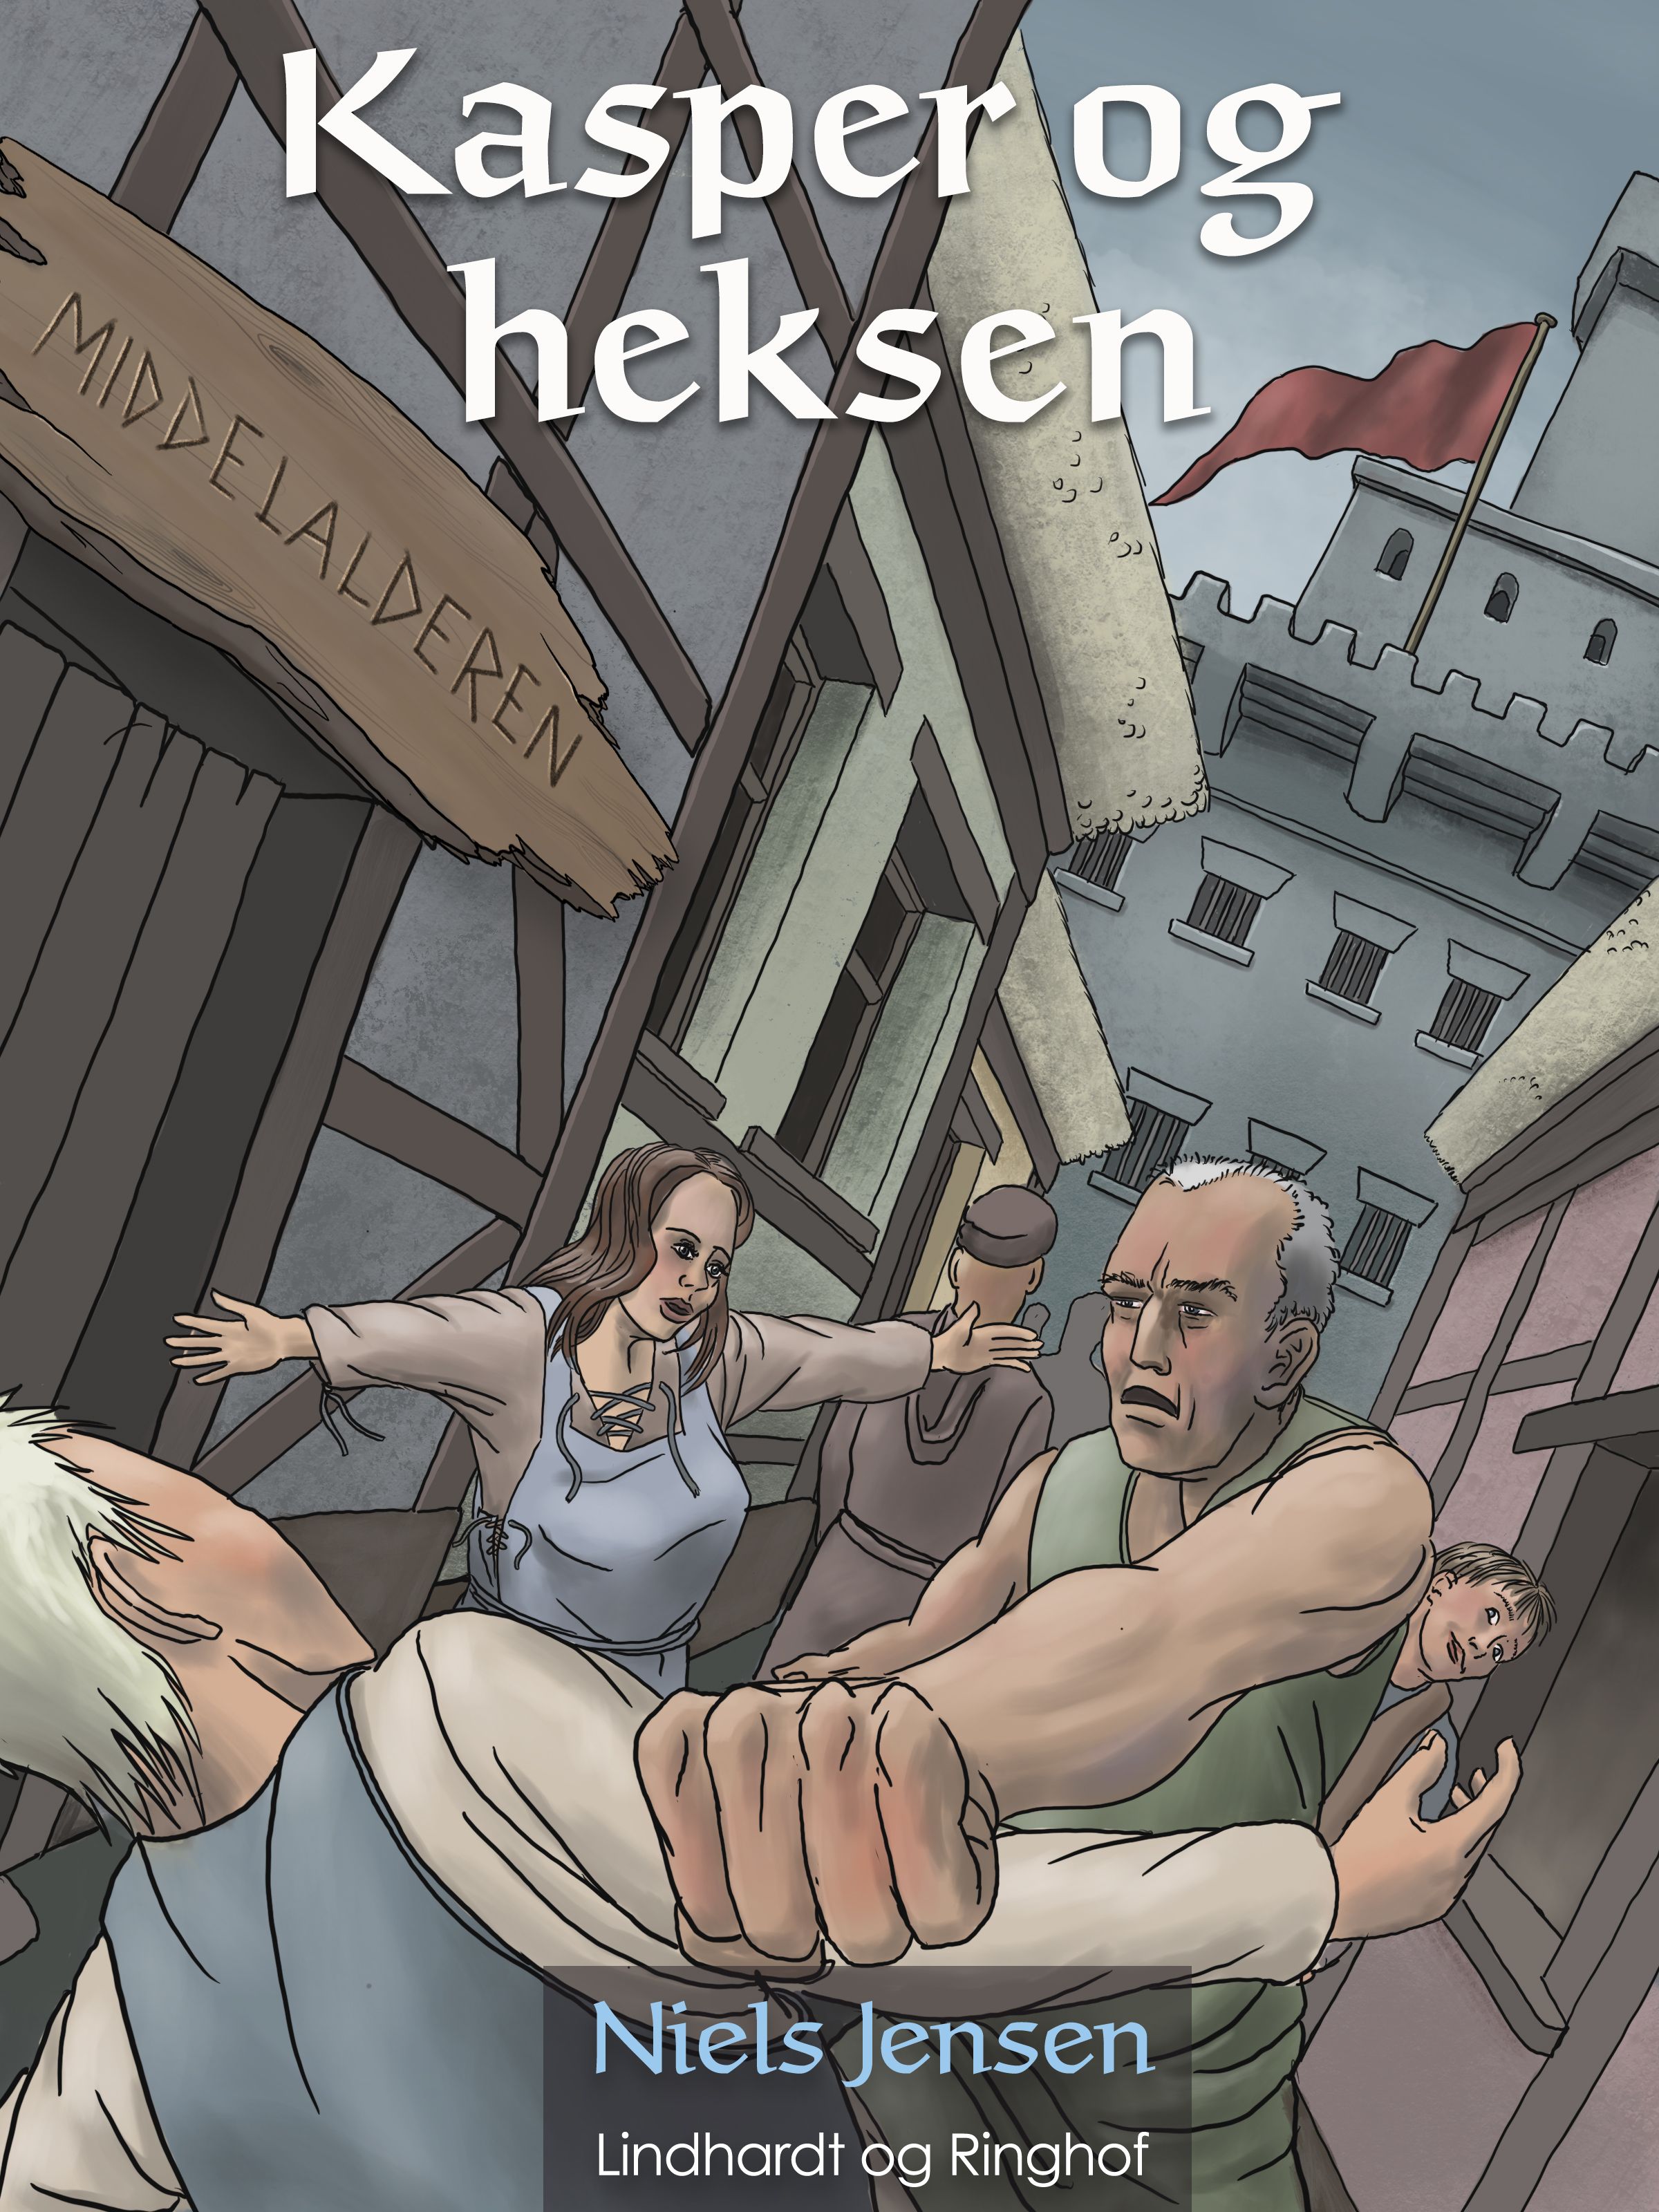 Middelalderen: Kasper og heksen, audiobook by Niels Jensen